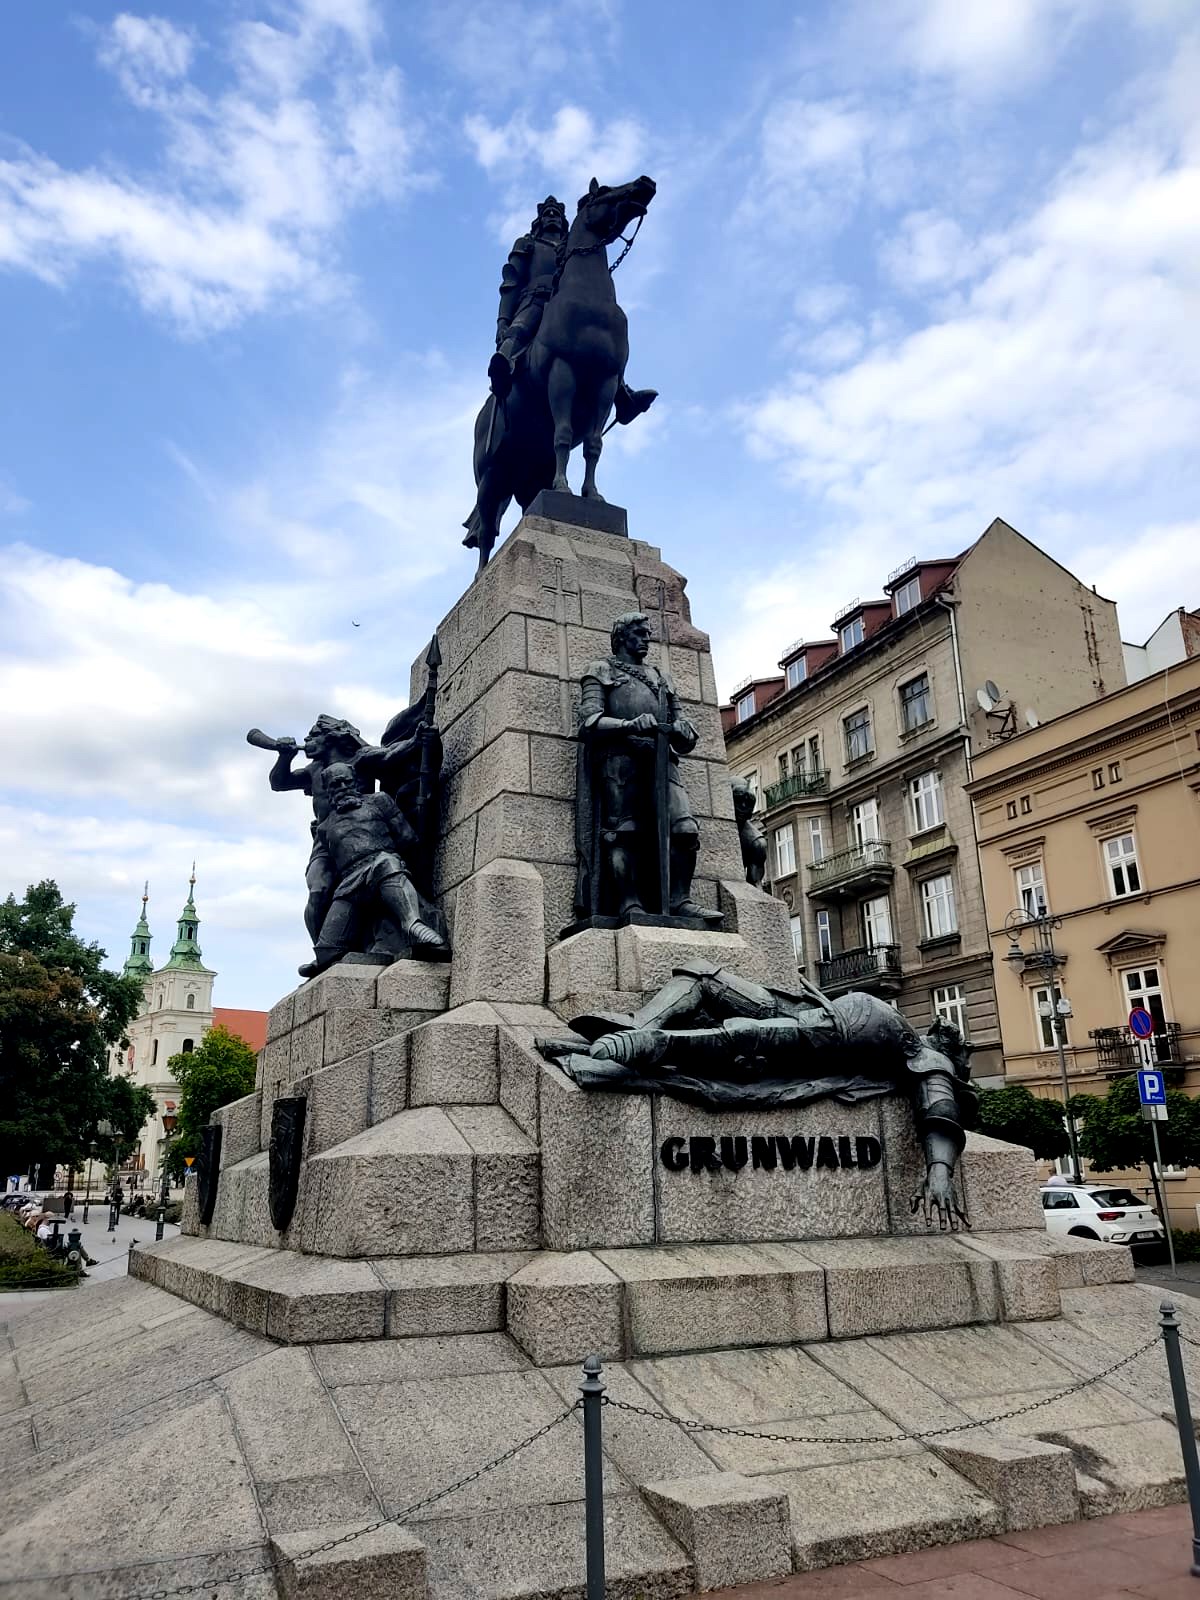 Grunwald - Cracovia (foto D. Cuomo - NonSoloRisparmio)